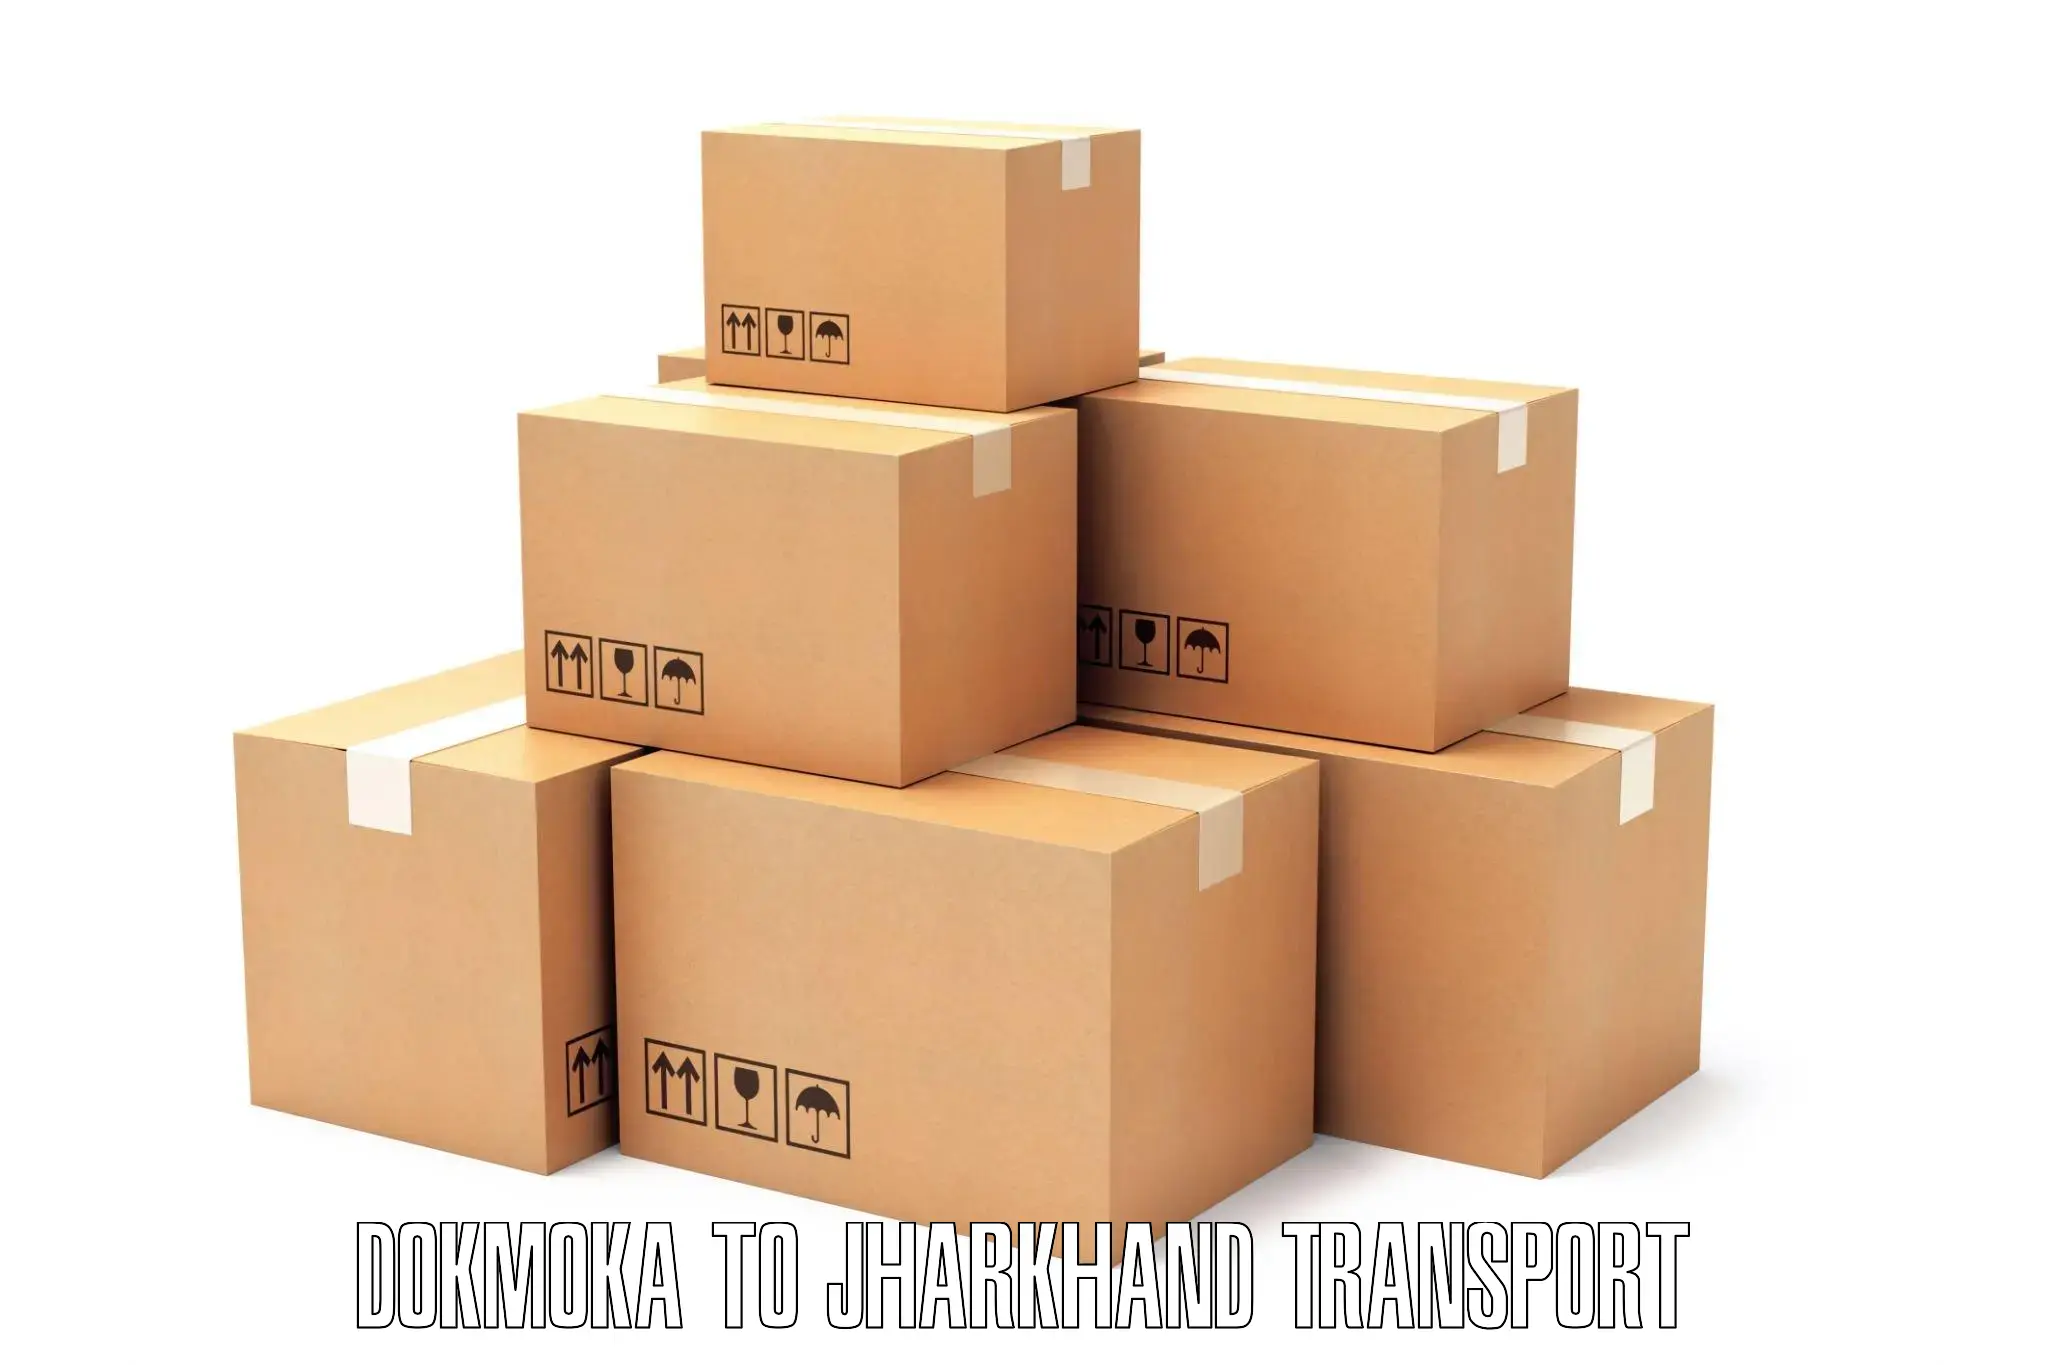 India truck logistics services Dokmoka to Medininagar